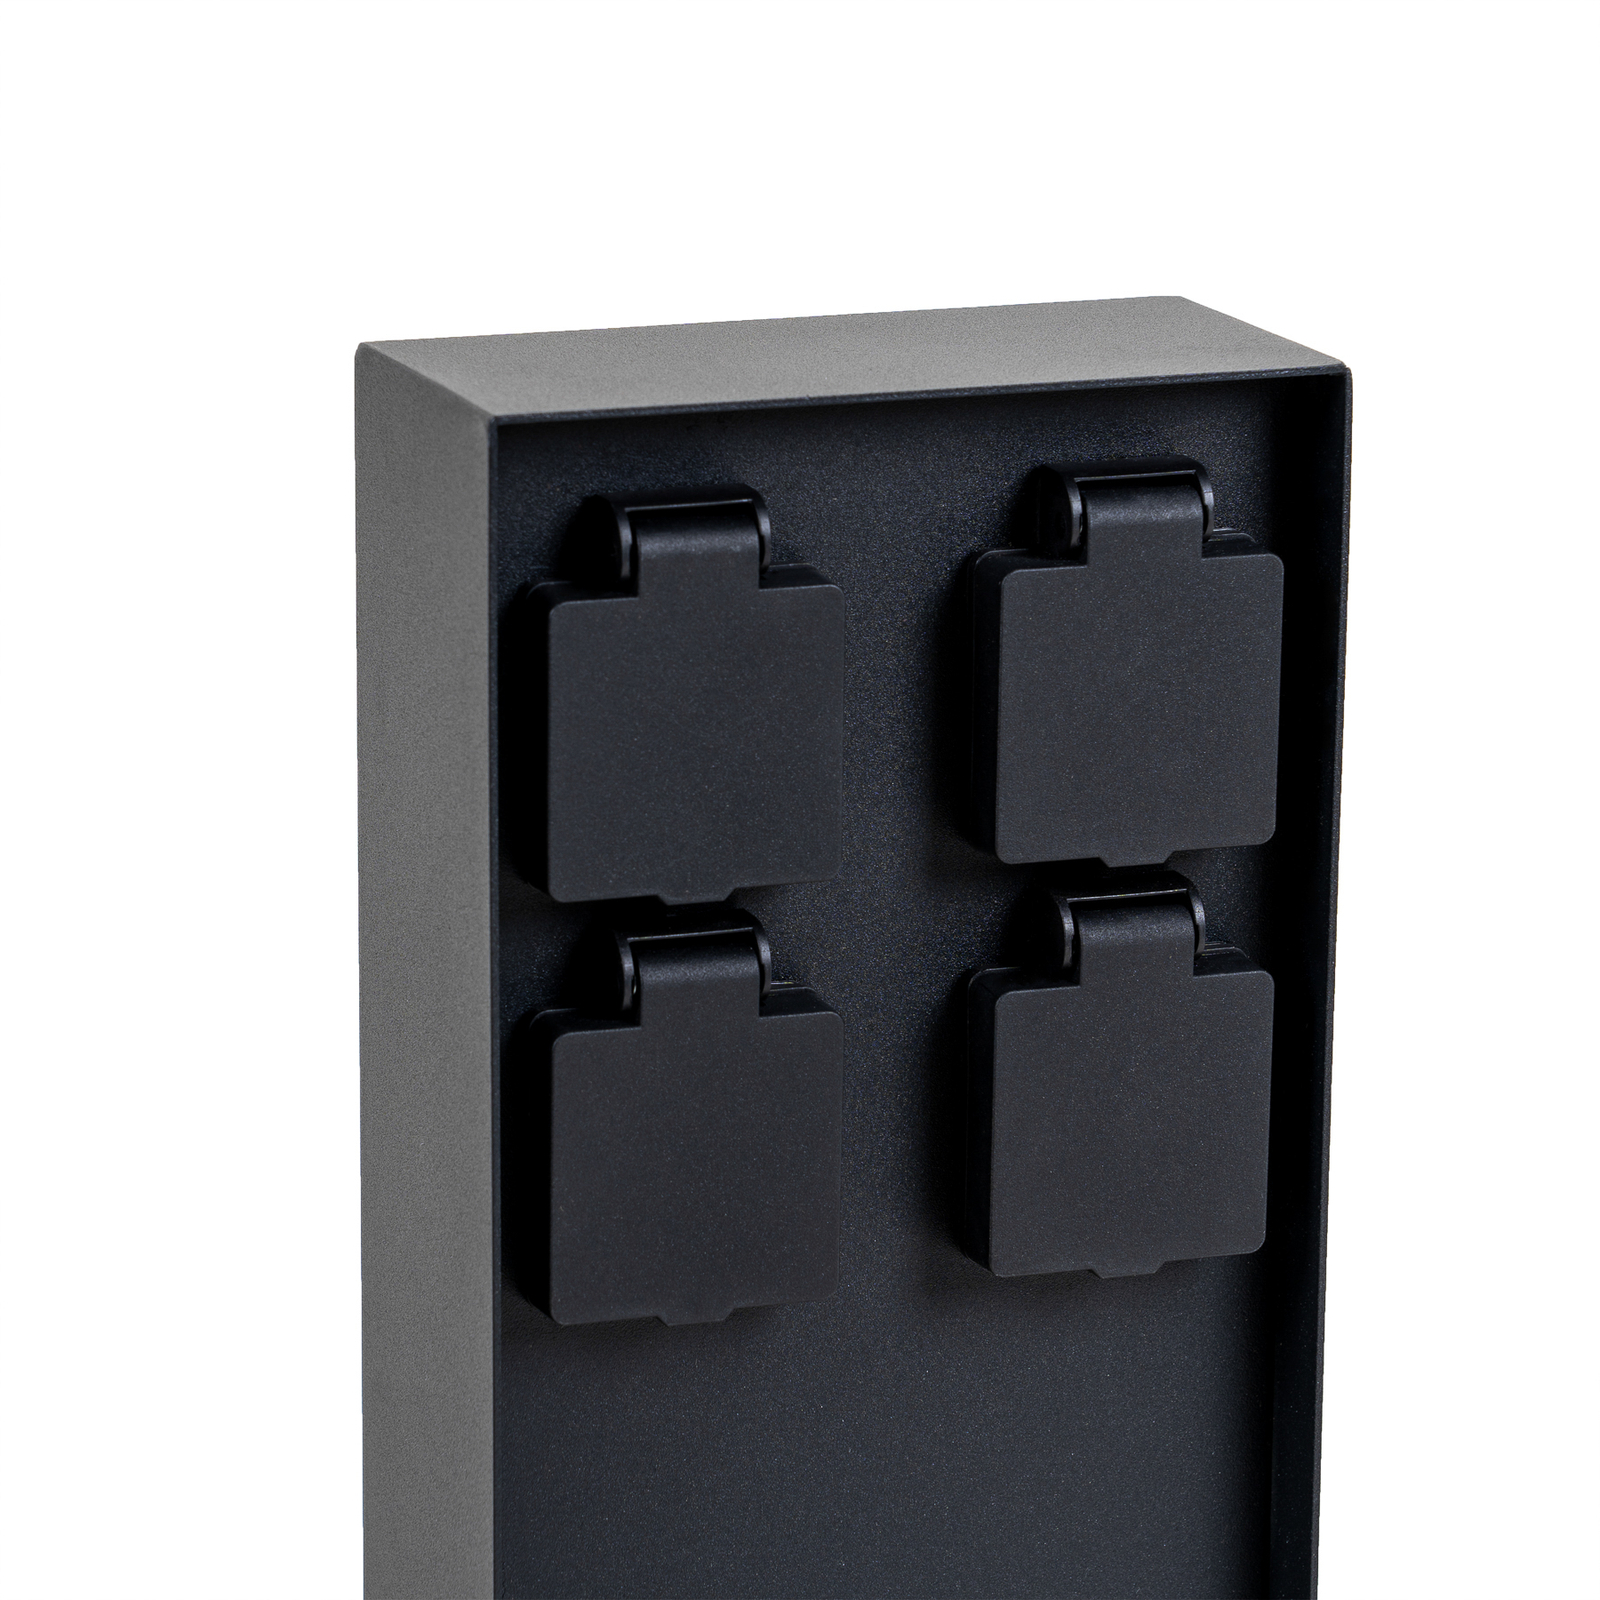 Prios Foranda energiezuil, 4 stuks, zwart, 40 cm